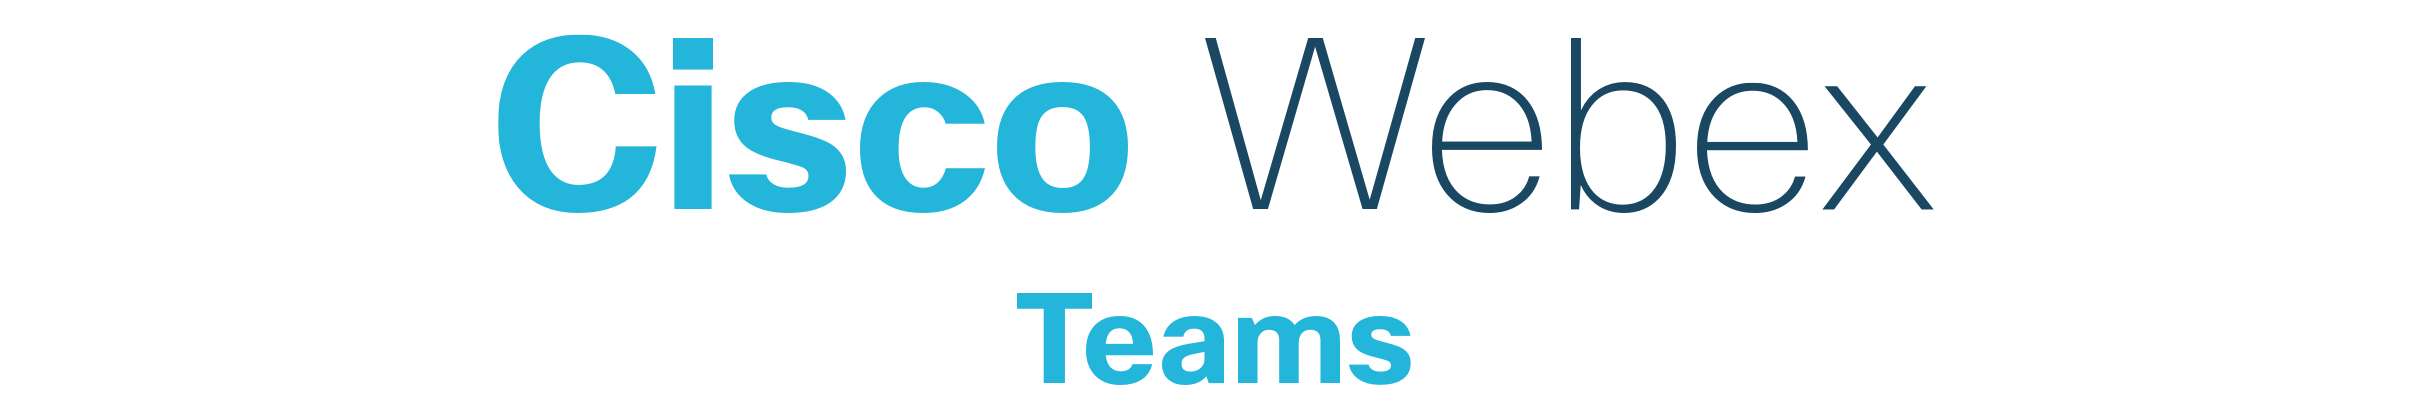 WebEx Team's Logo - Home